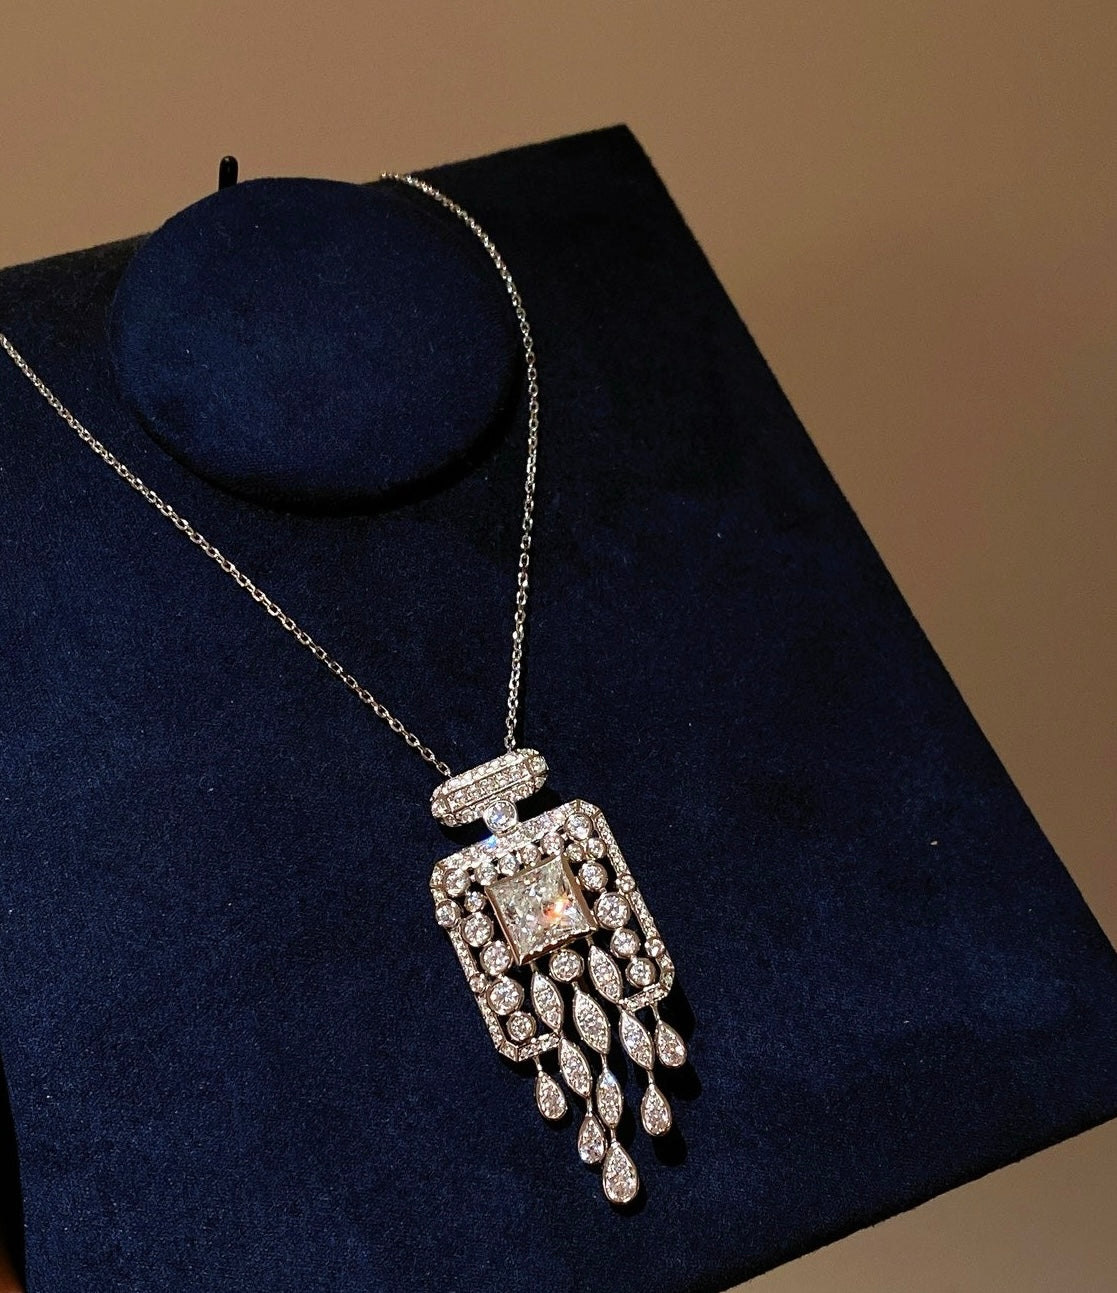 Exquisite 4CT Zircon Convertible Necklace & Brooch